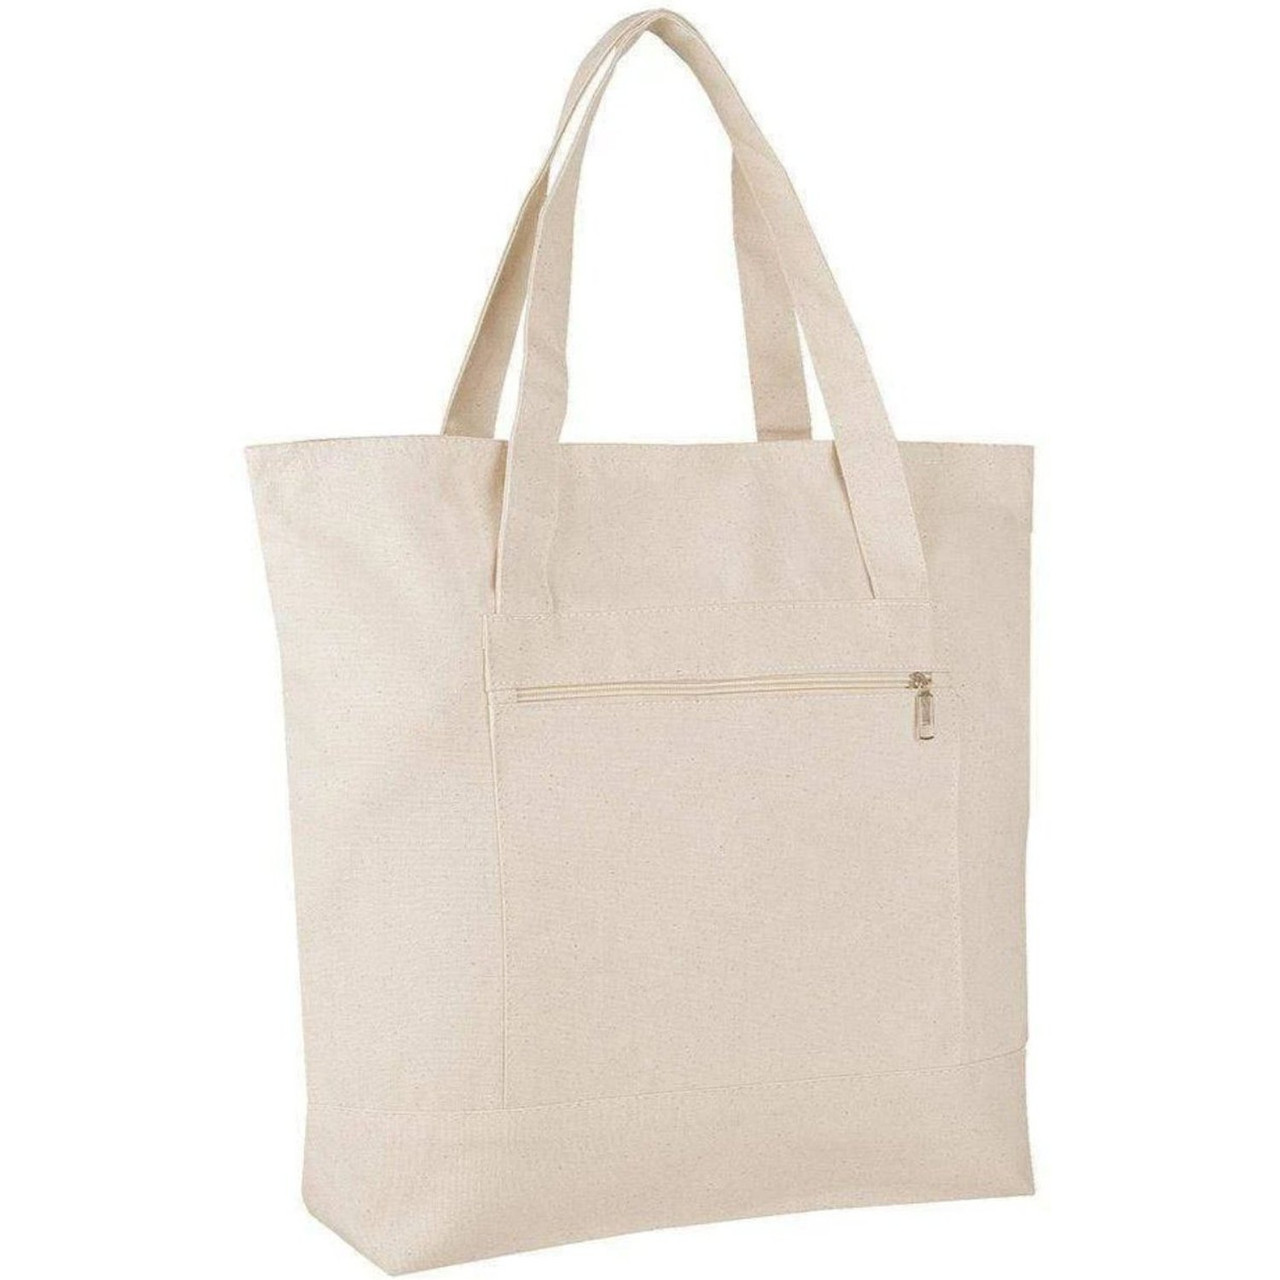 EXCLUZO Women Canvas Shoulder Bag Handbag Multi-Pockets Vintage Totes Hobo  Bags : Amazon.in: Shoes & Handbags